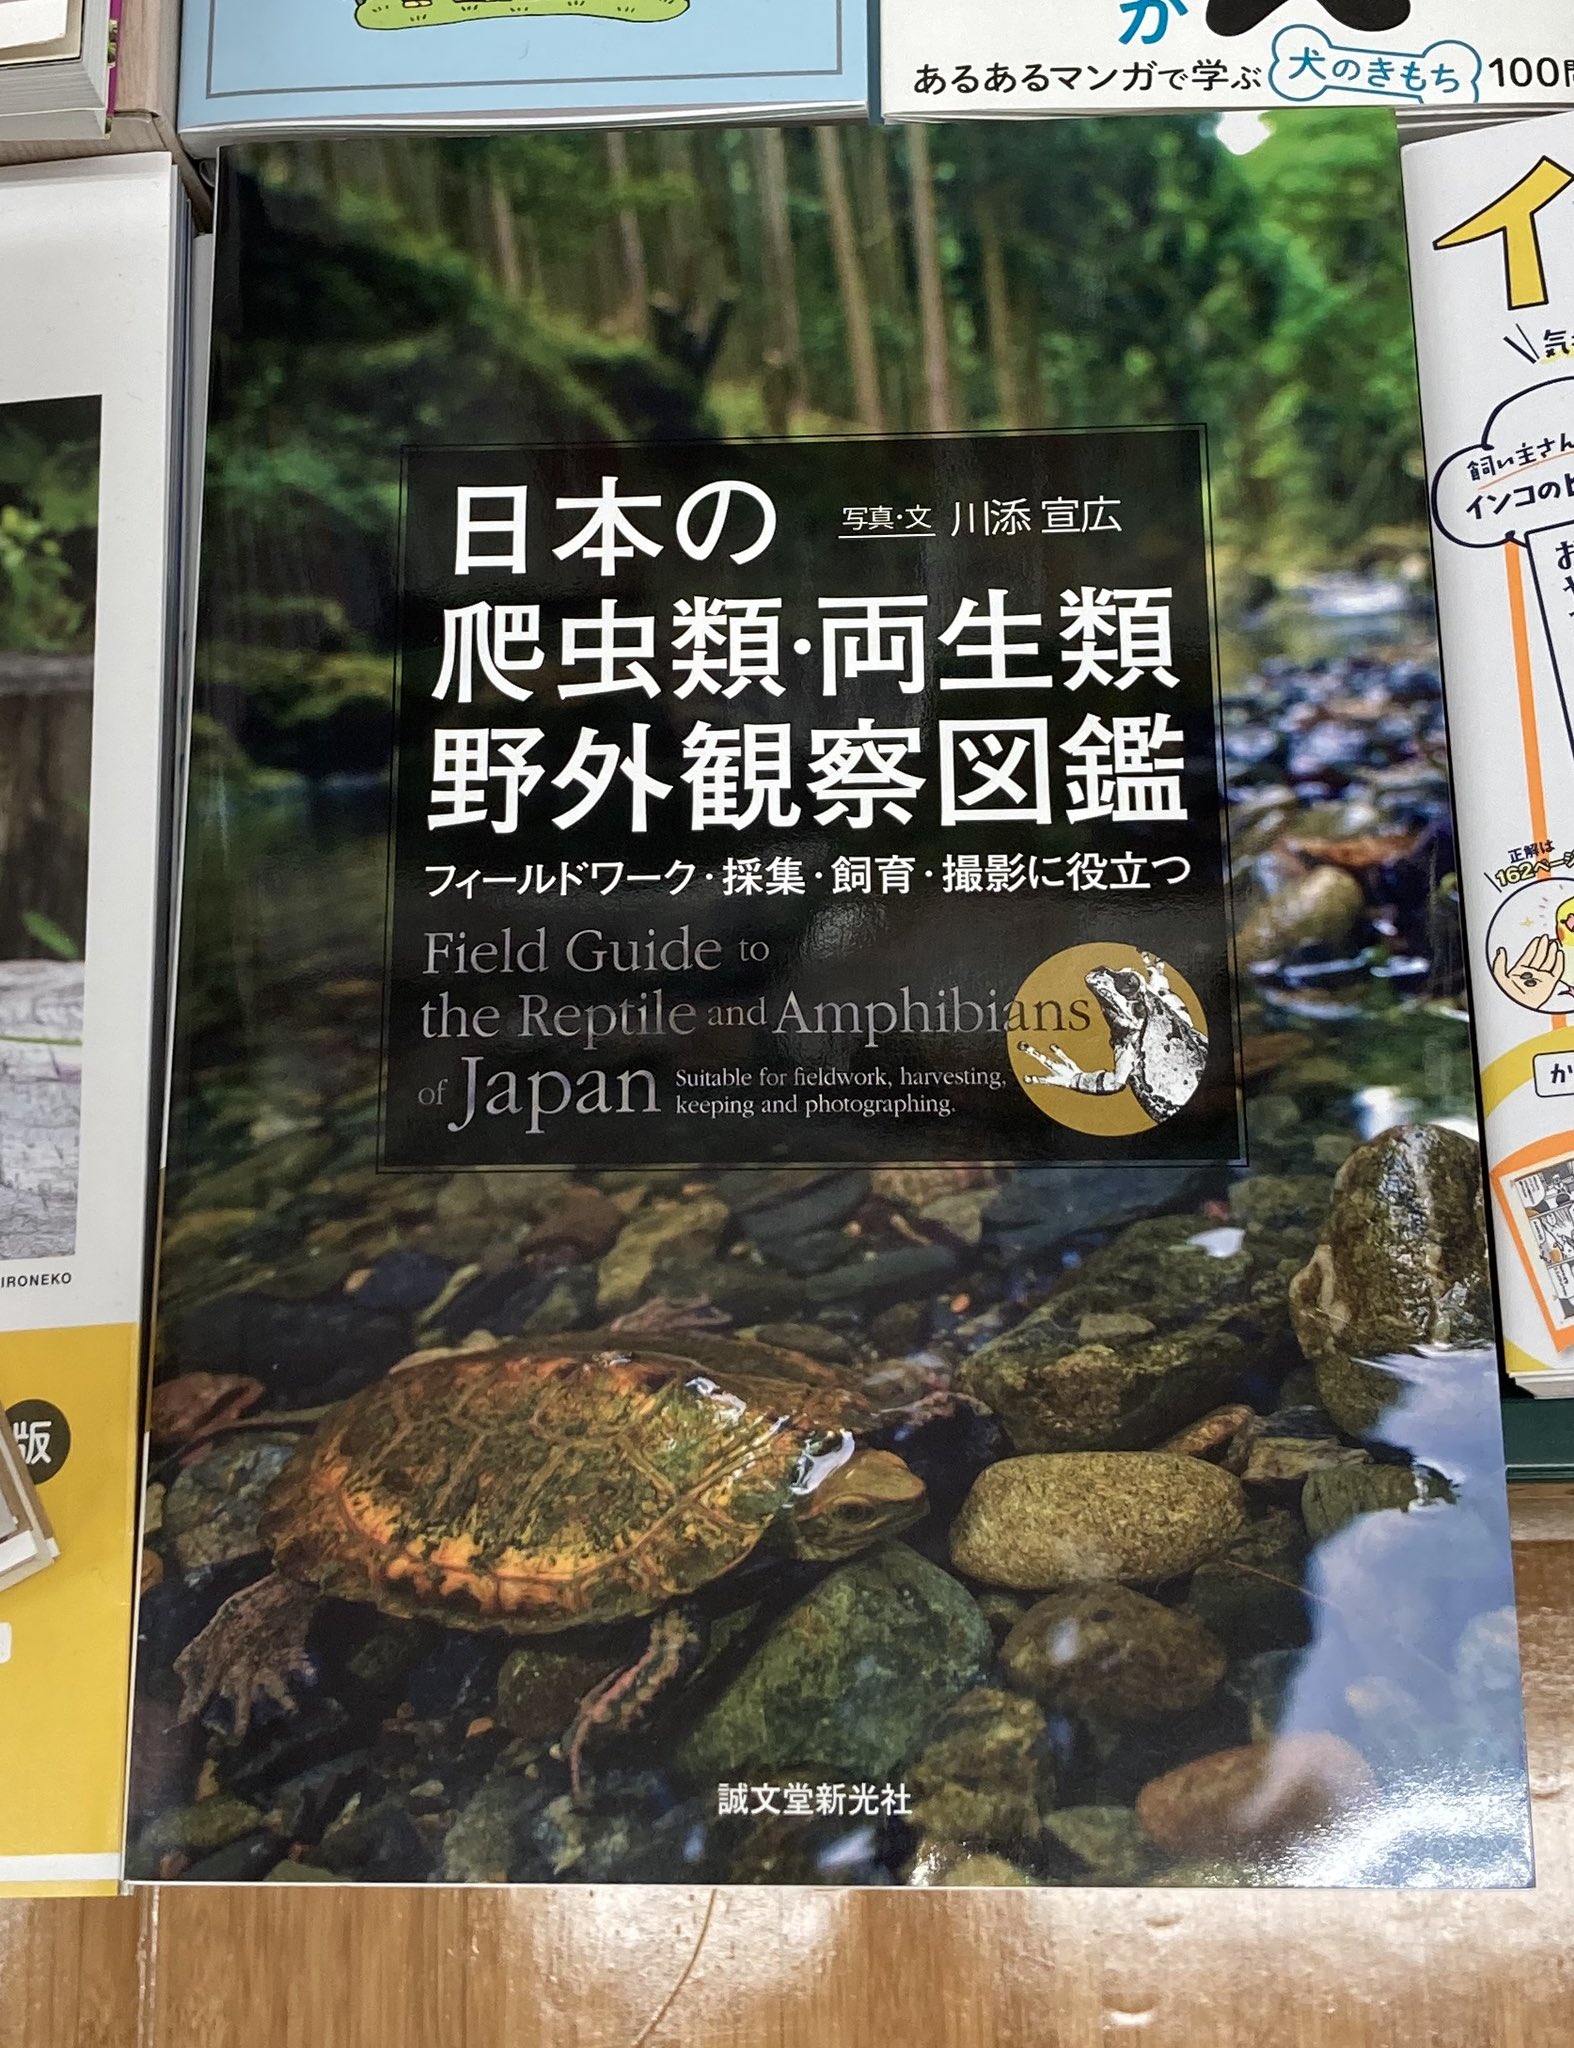 Hi 3158 そして これ 日本の爬虫類 両生類 野外観察図鑑 鱗の博物誌 鱗の博物誌は 特におすすめ T Co A0basojwtq Twitter